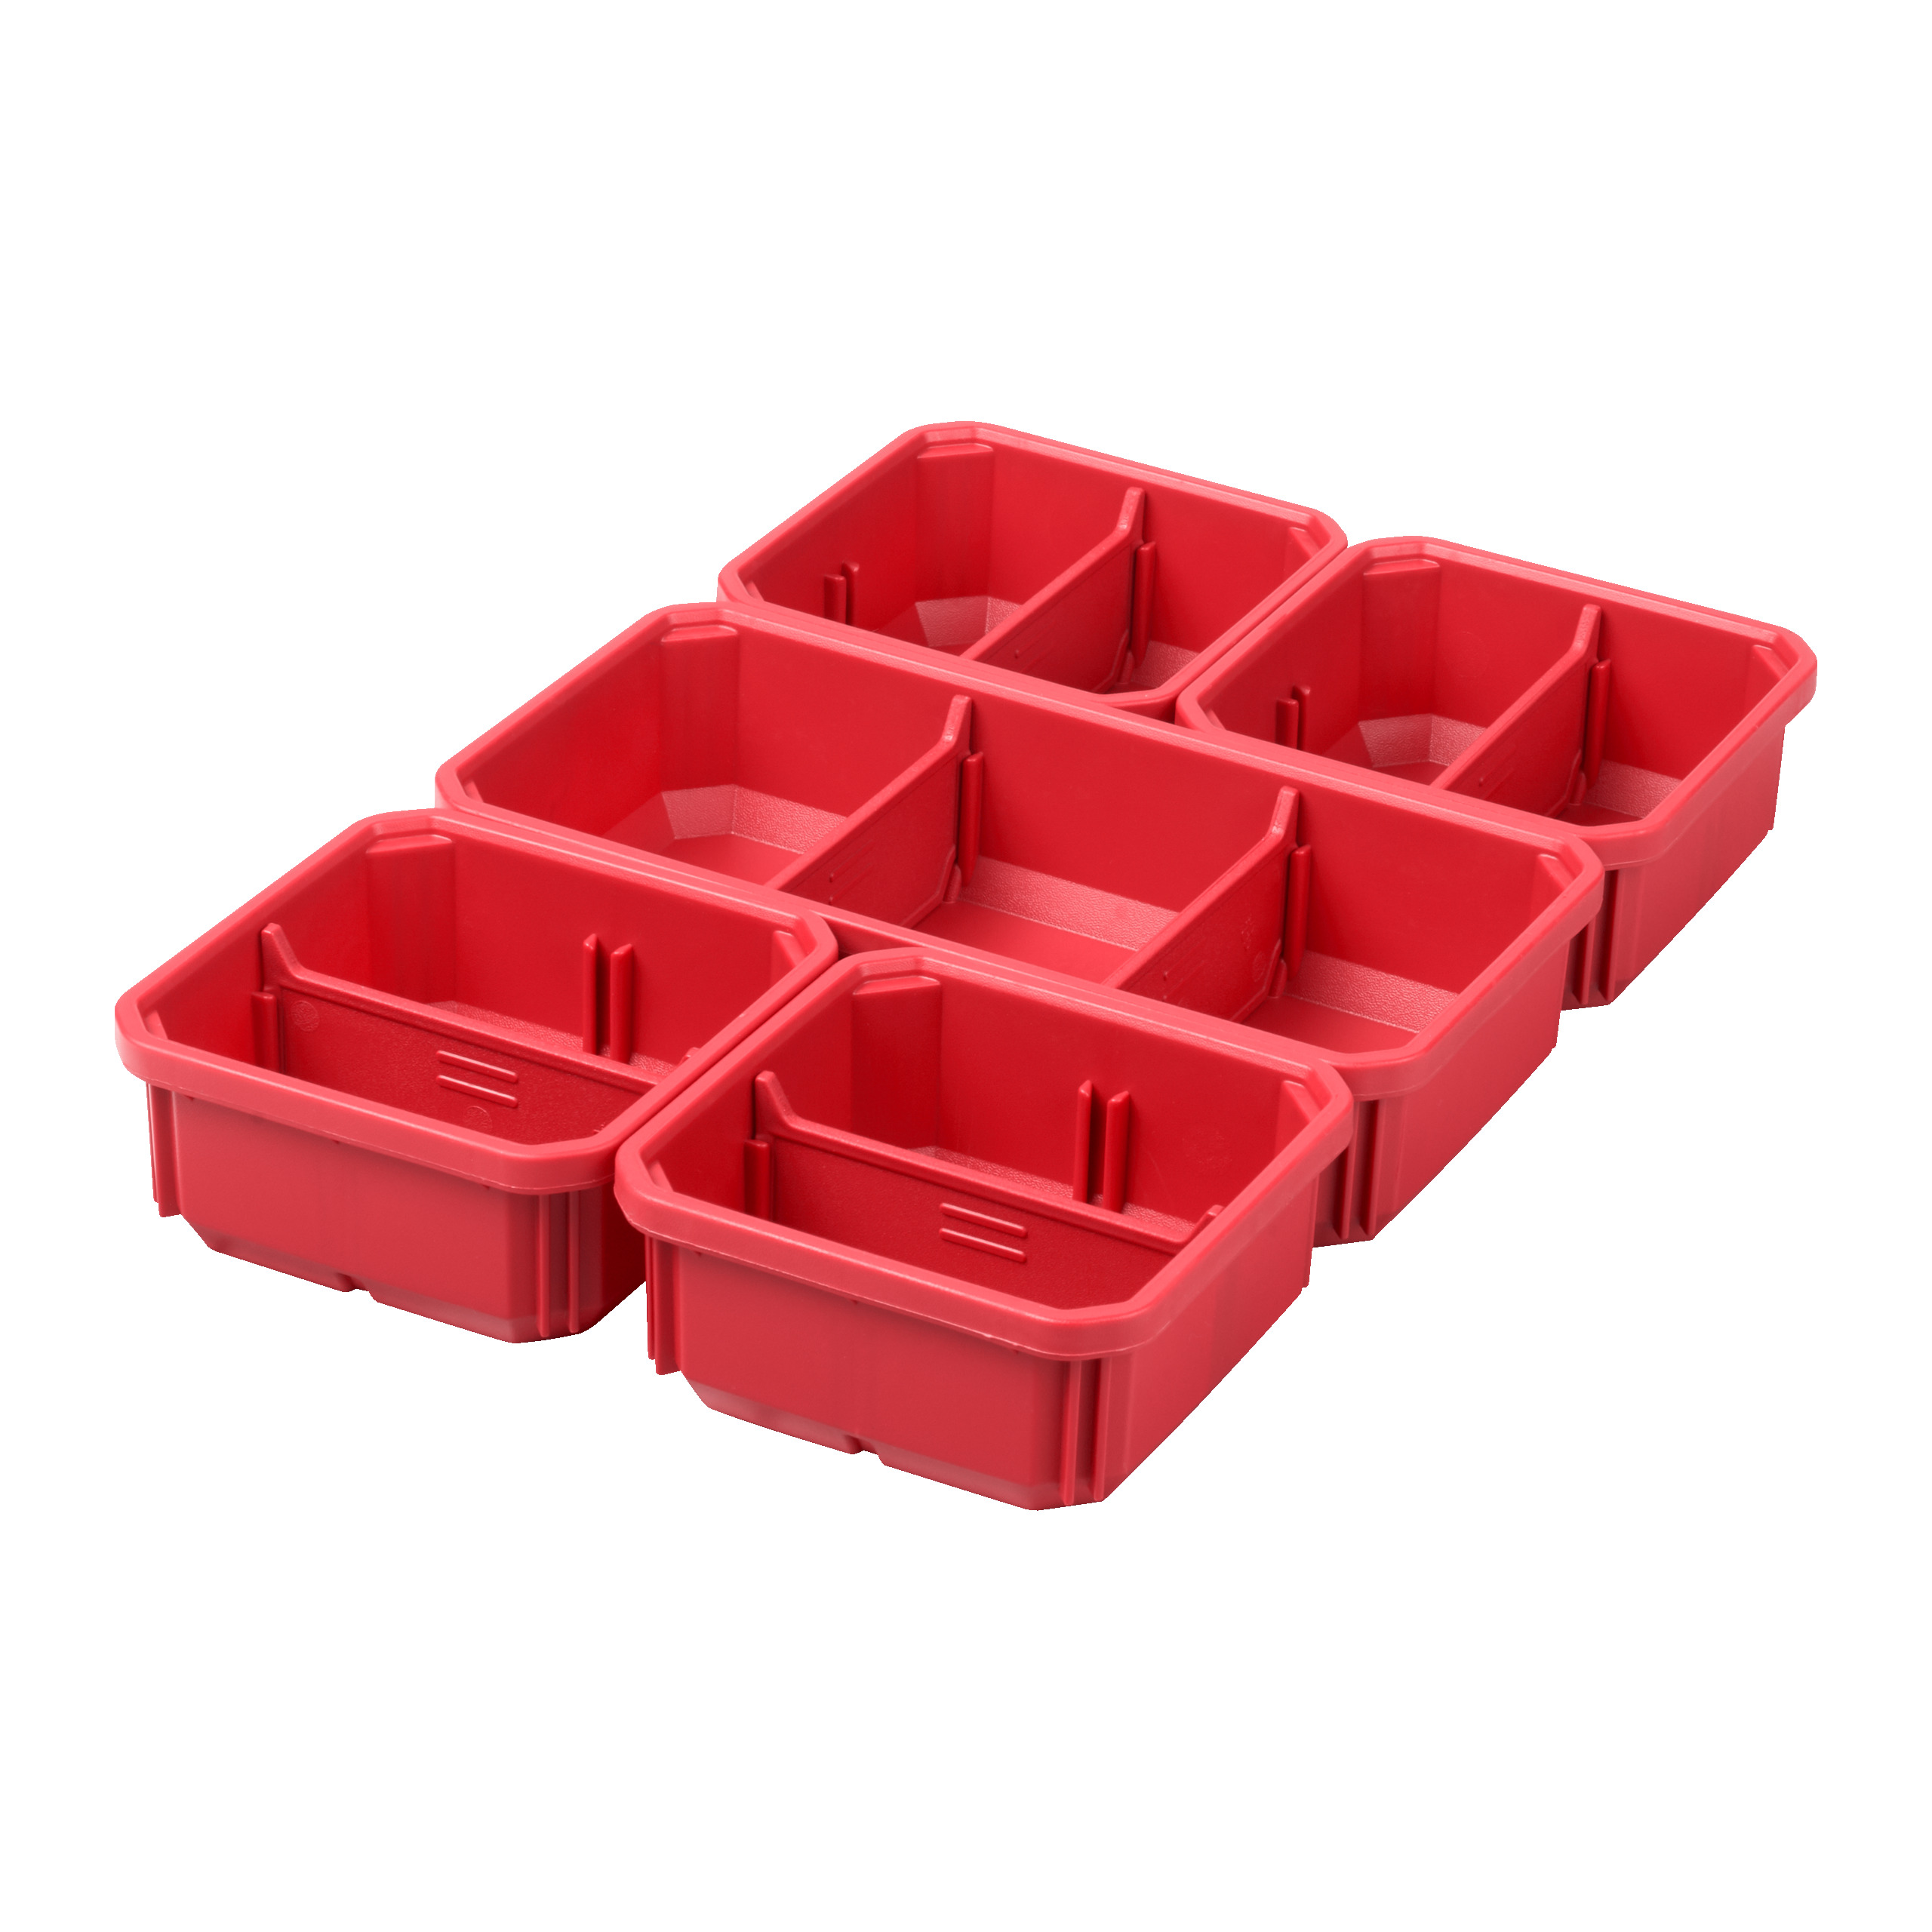 PACKOUT Ersatzboxen 5 Stück | für PACKOUT Organiser Slim und Organiser Slim Compact